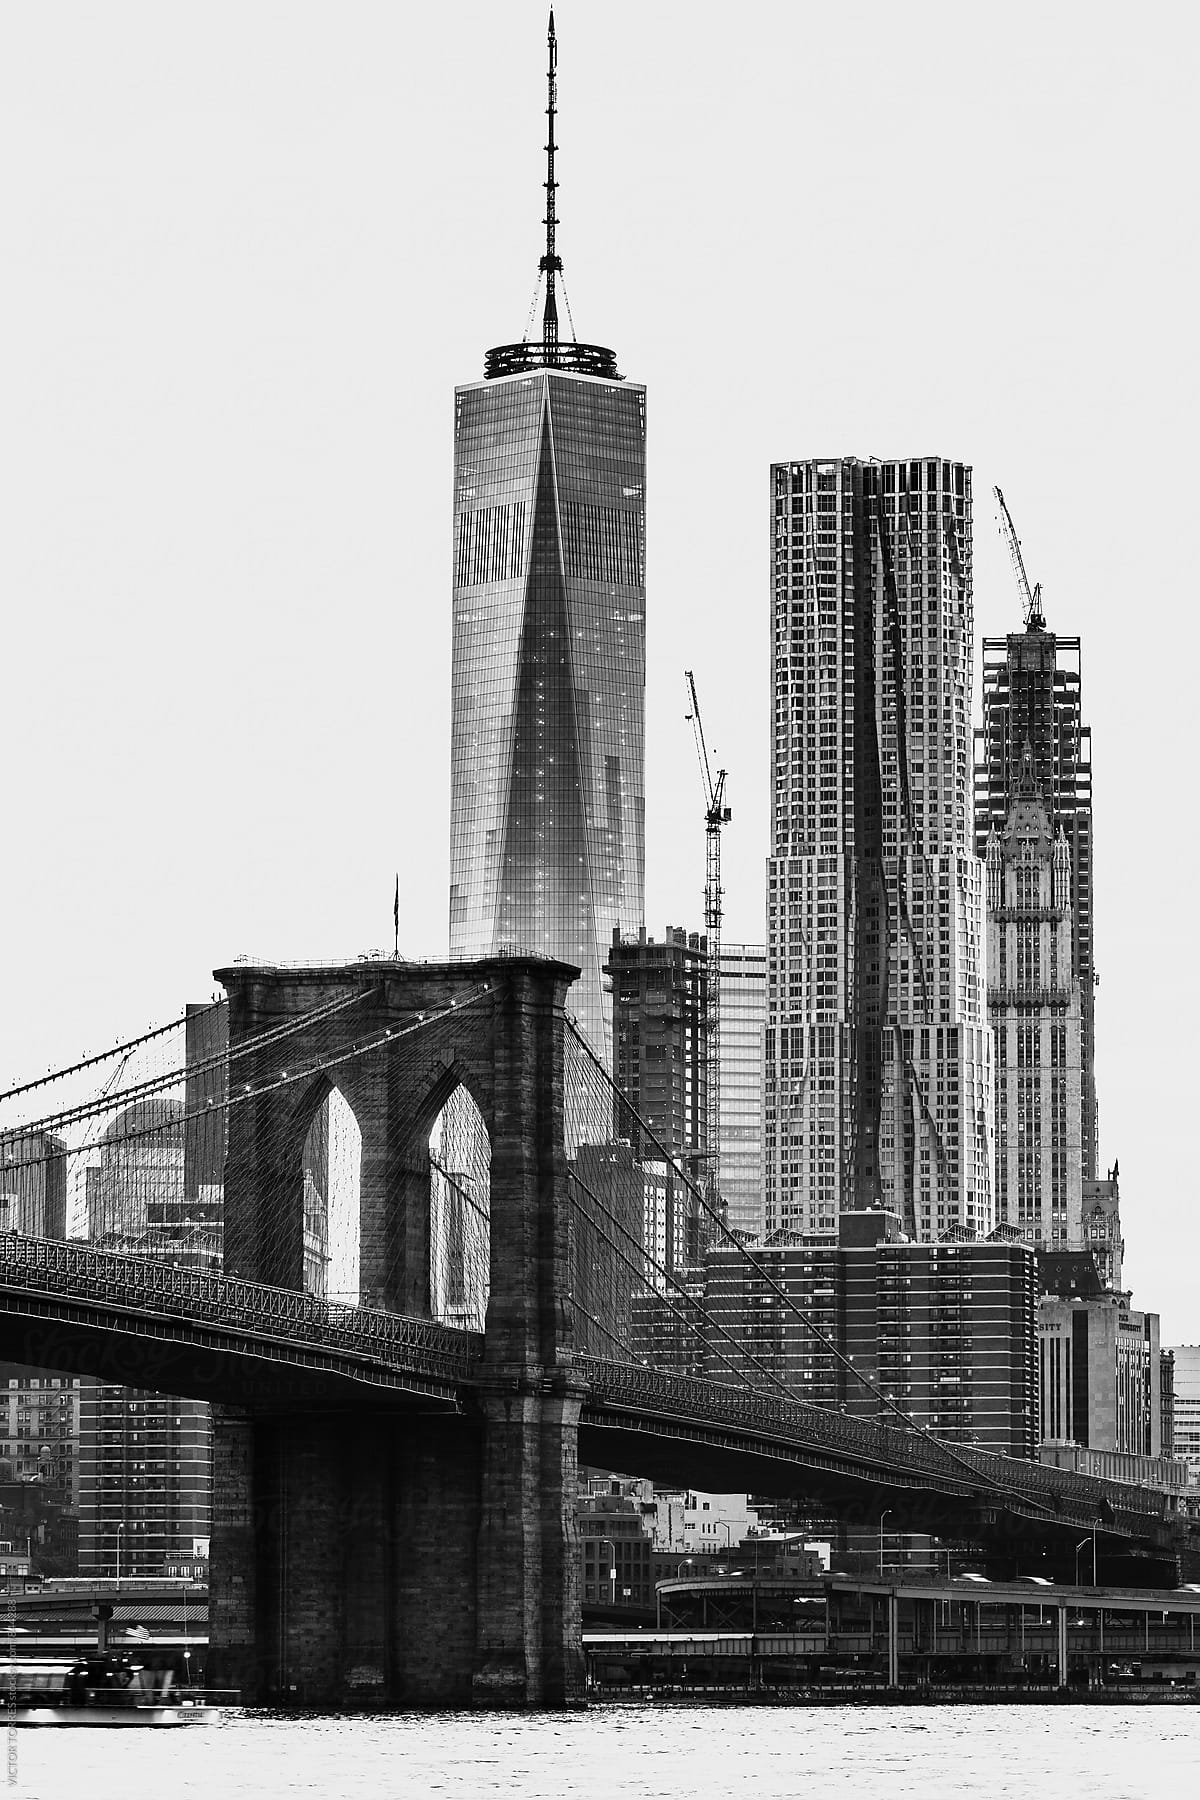 Brooklyn Bridge and East River, New York